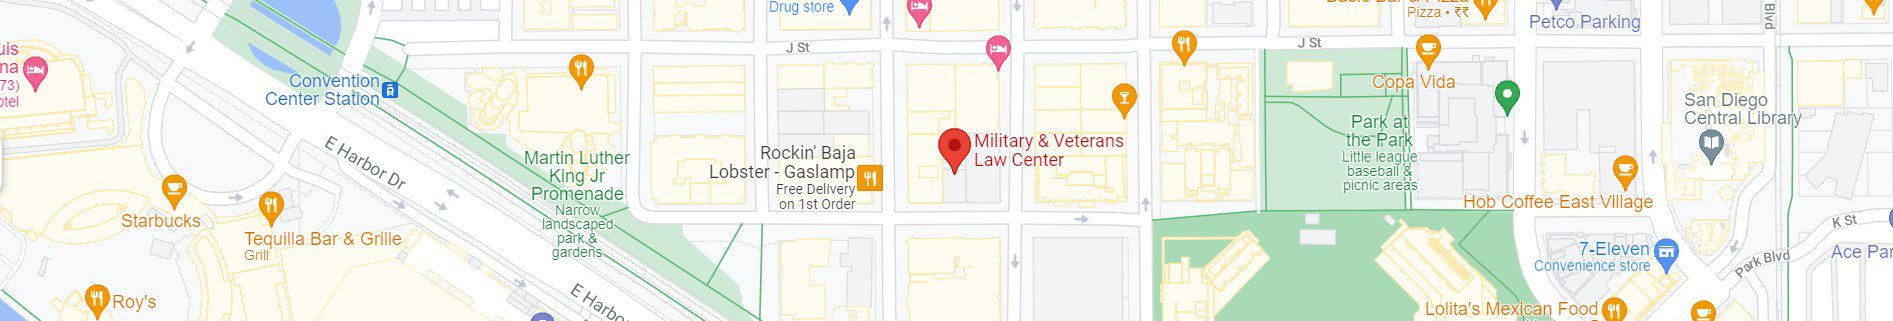 Military & Veterans Law Center